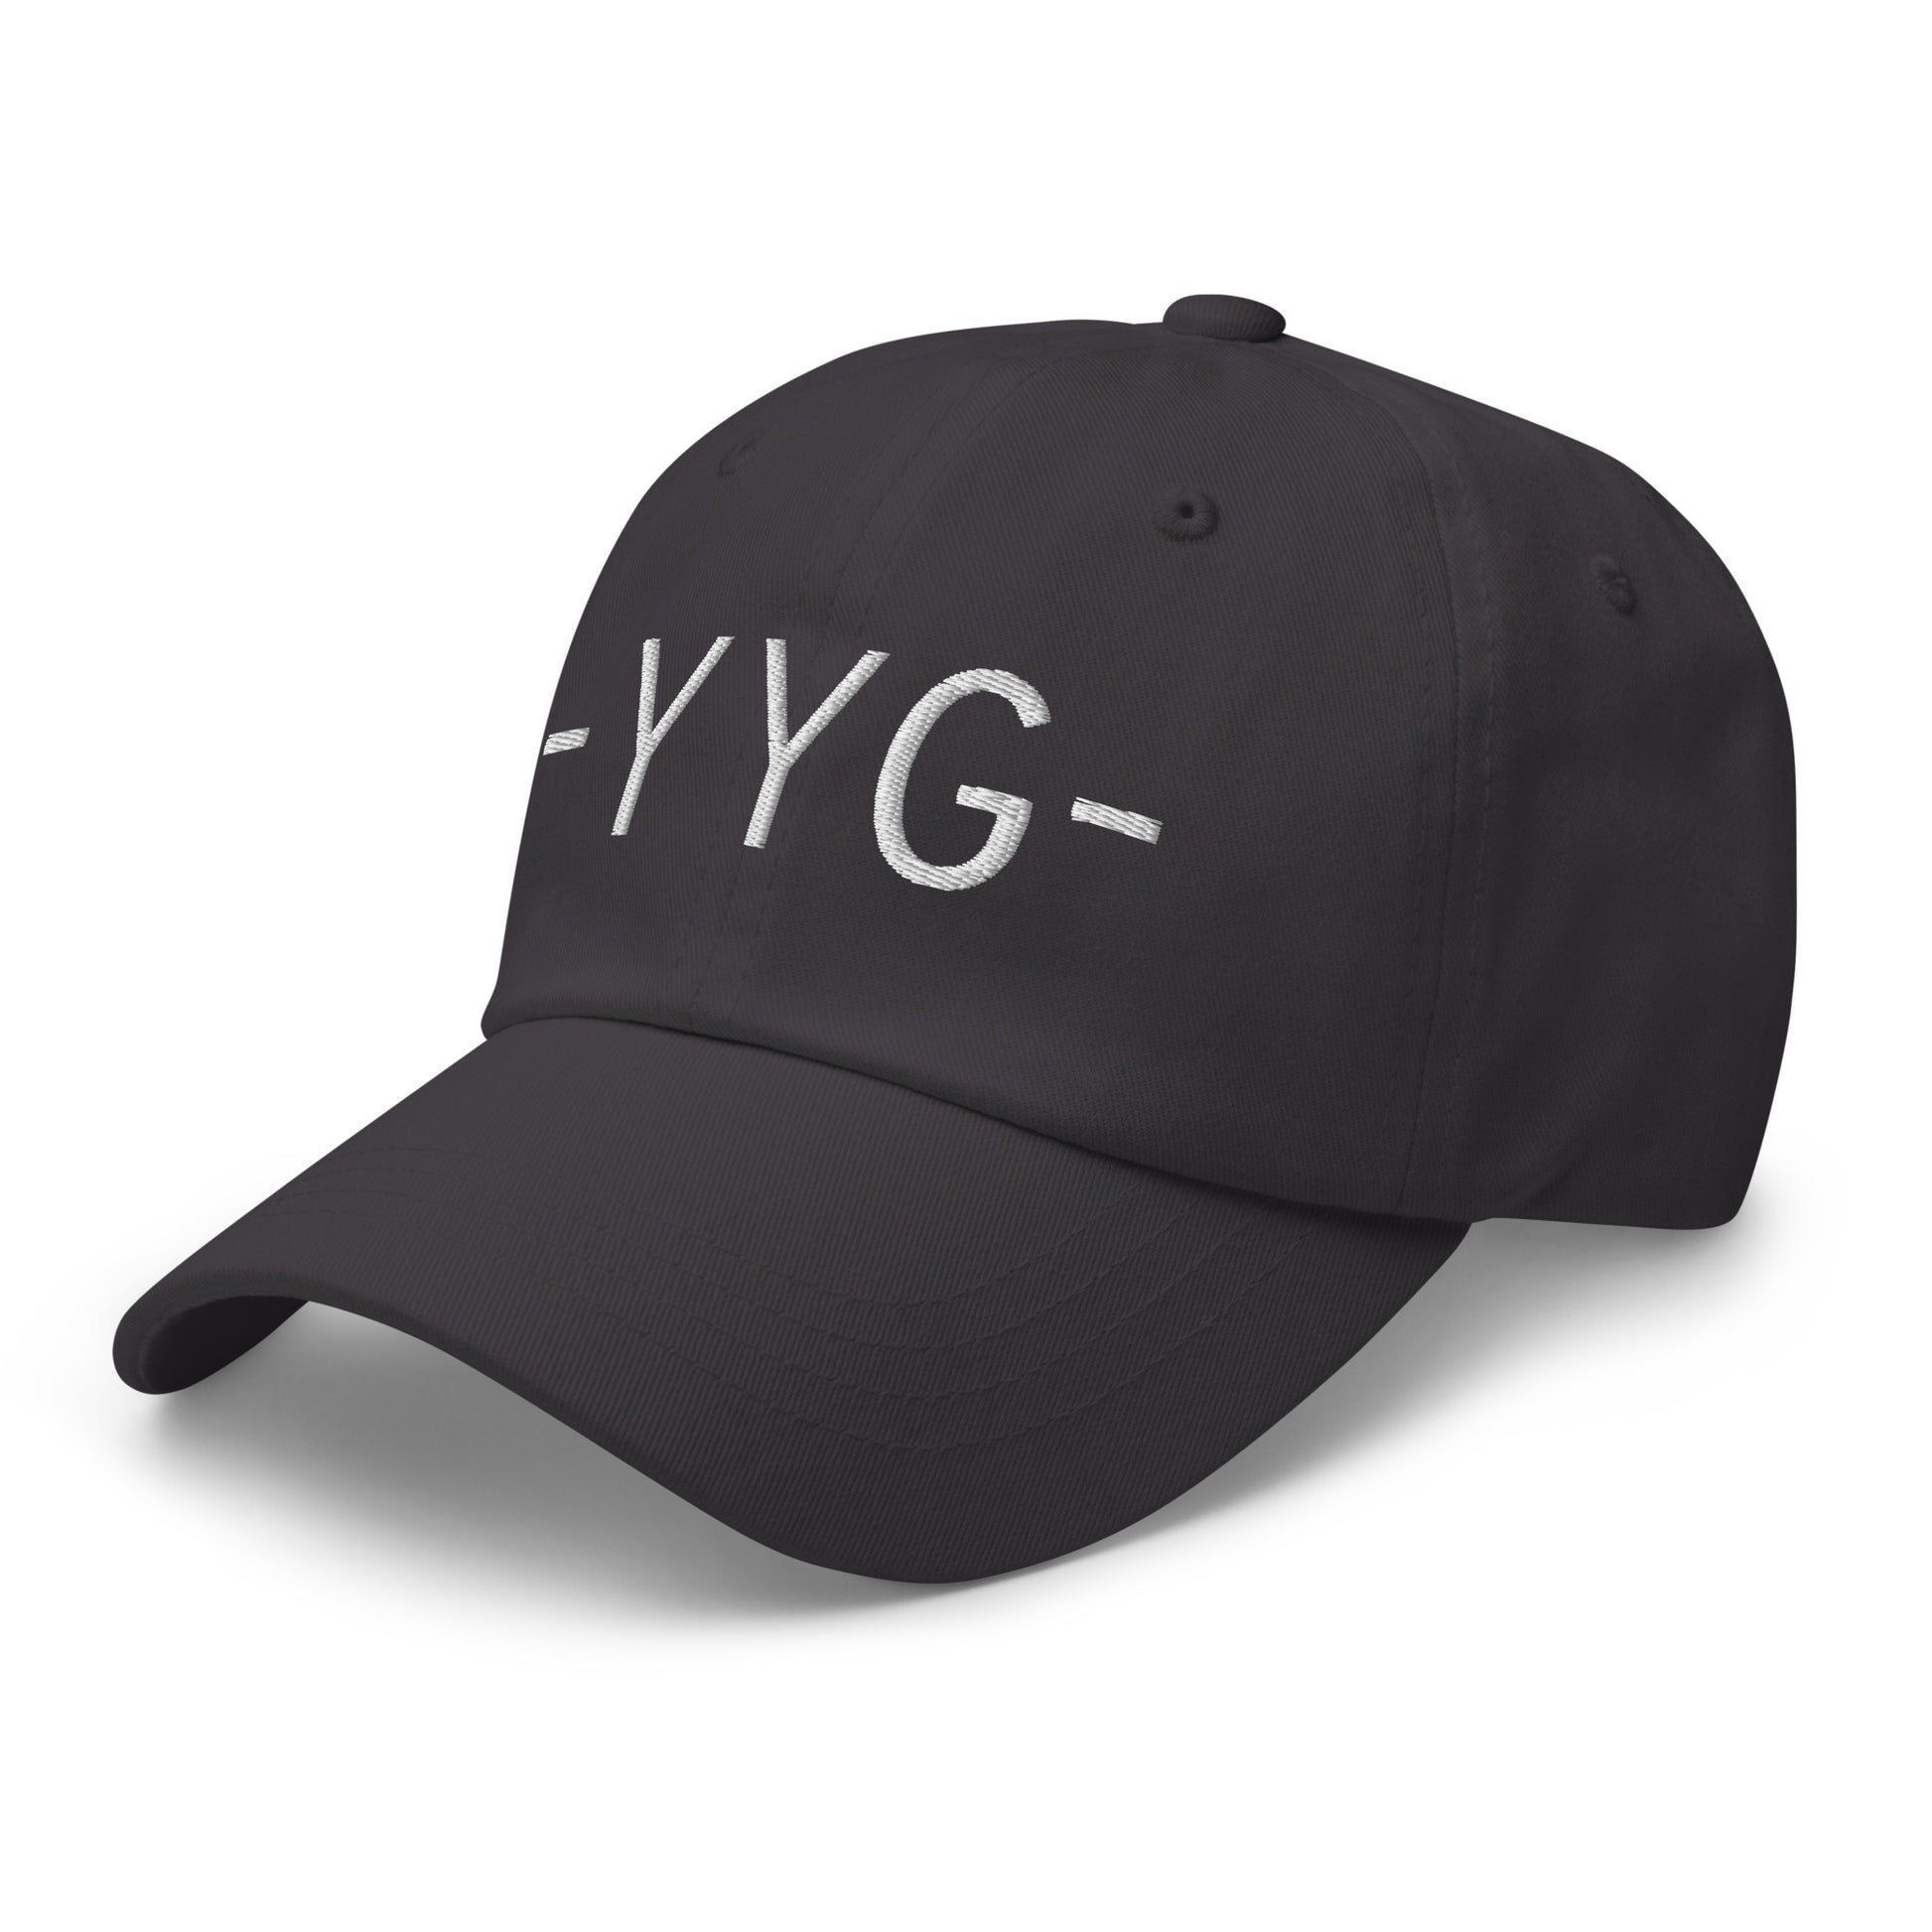 Souvenir Baseball Cap - White • YYG Charlottetown • YHM Designs - Image 20